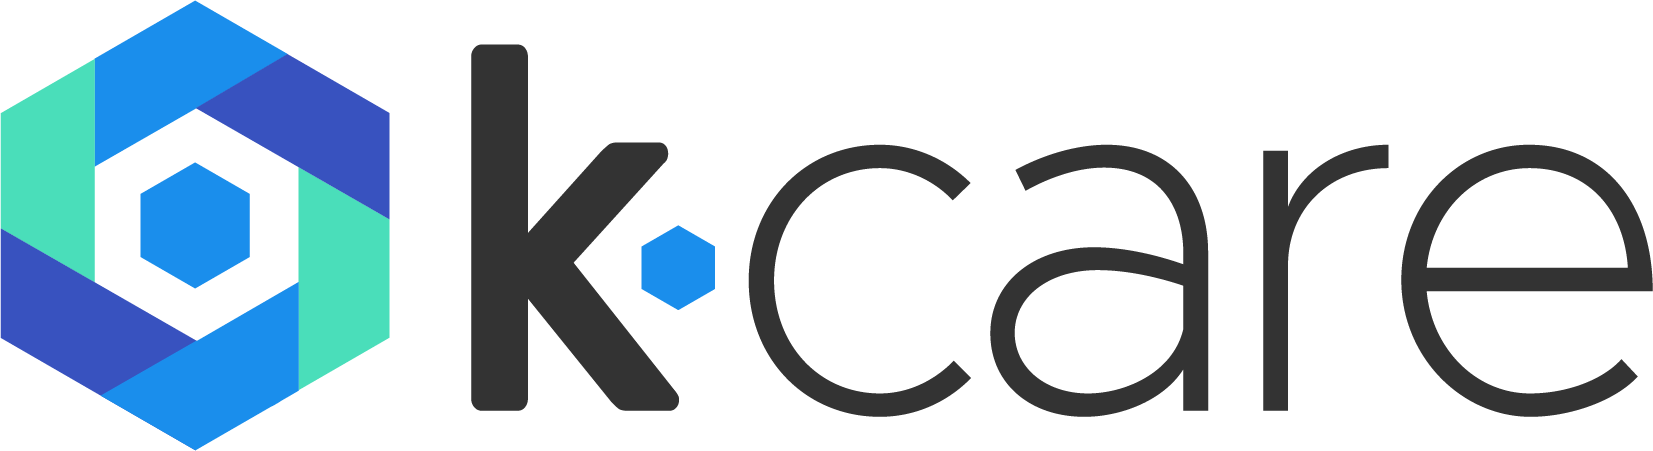 KCare-logo-final